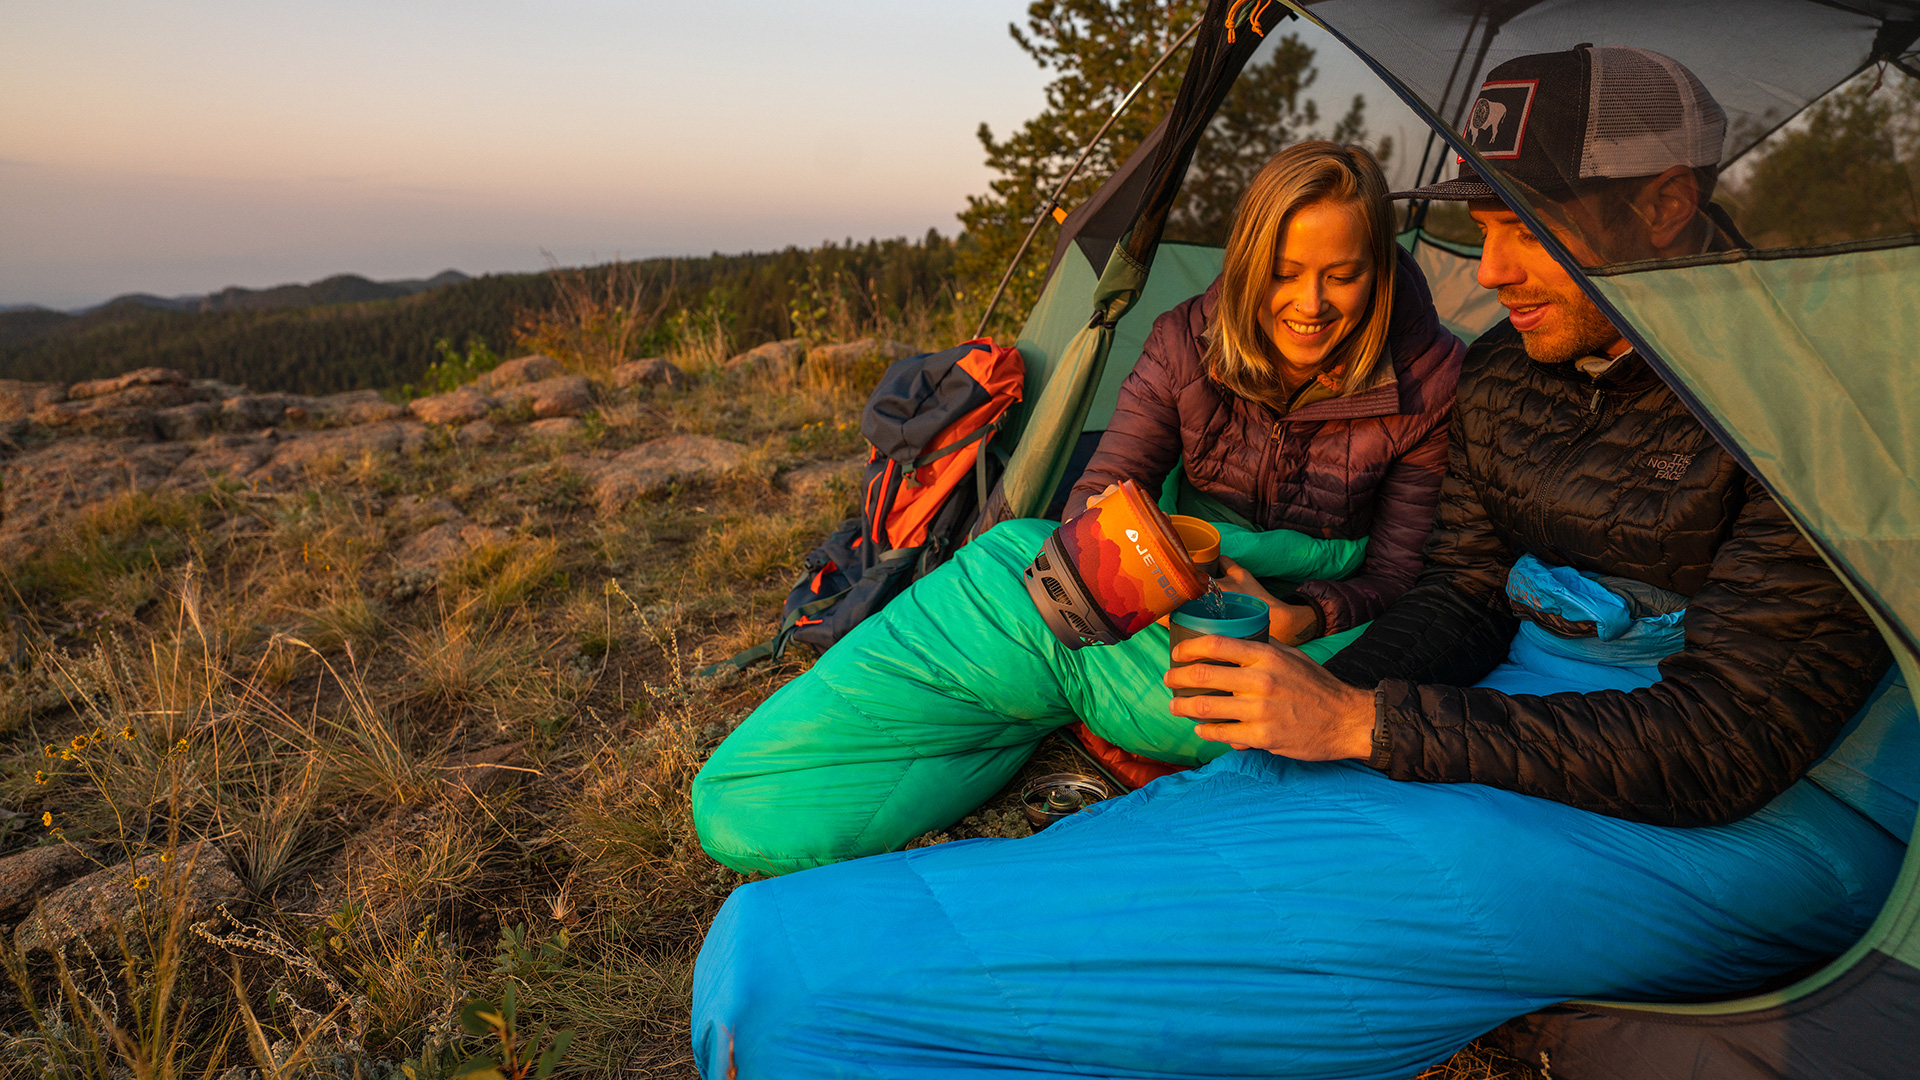 Double Sleeping Bag 2 Single Bags Camping Hiking Waterproof  Sleeping Pad Tent